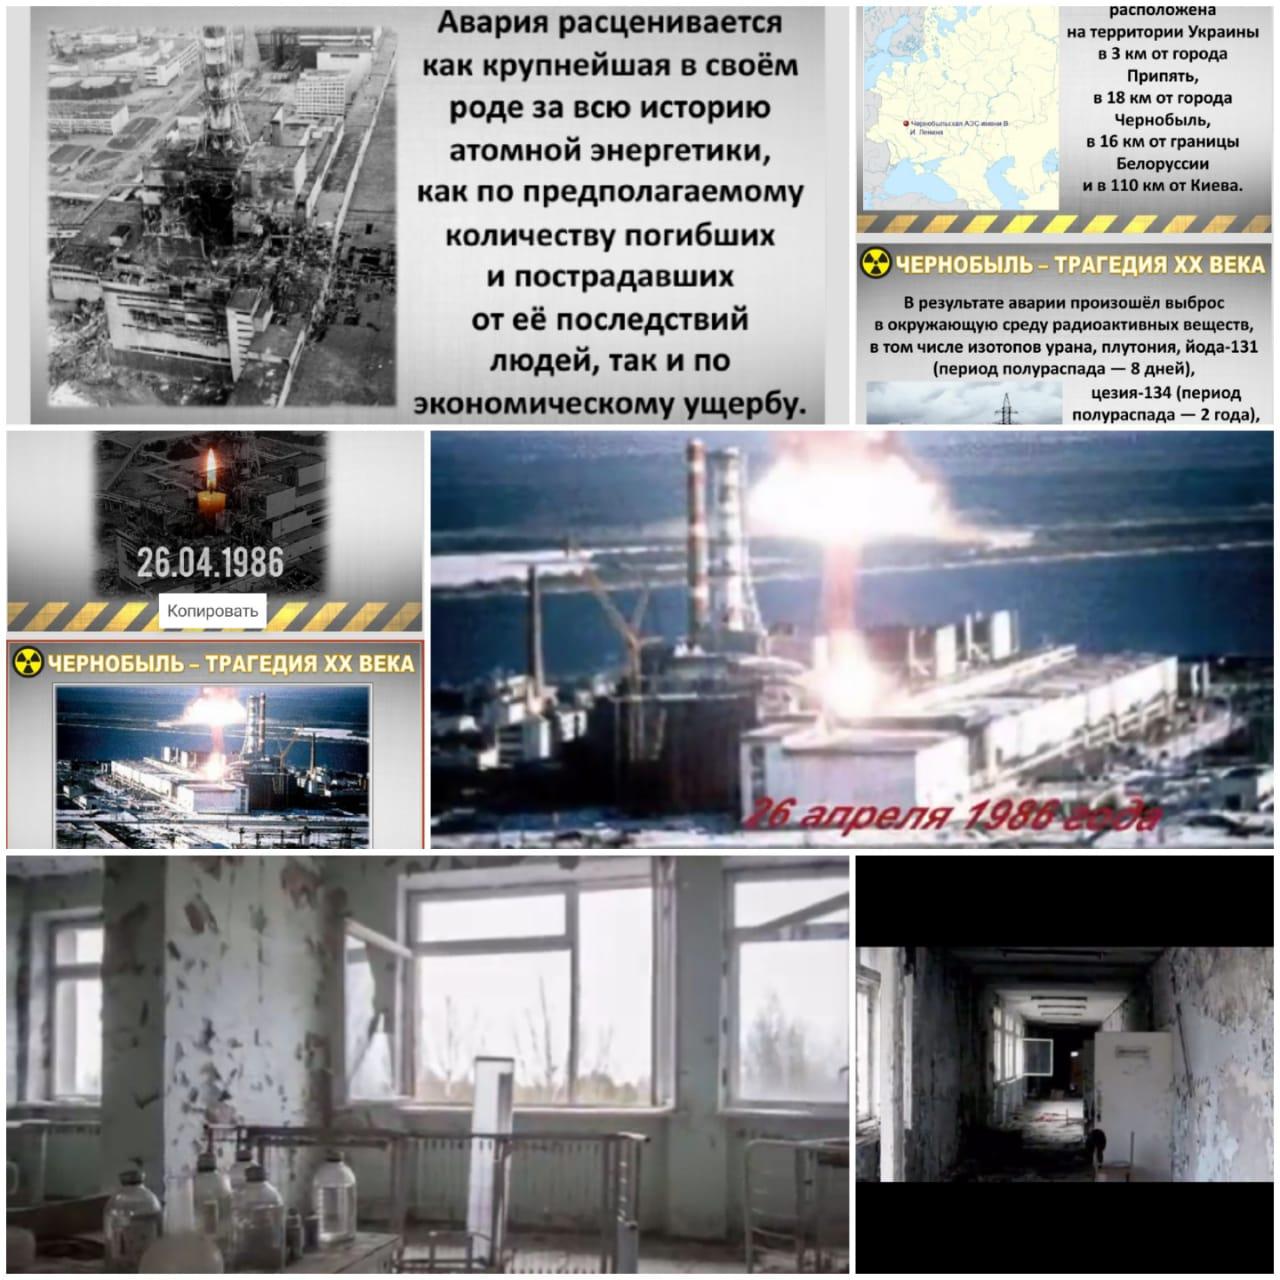 Чернобыль трагедиясы балалардың көзімен/Чернобыльская трагедия глазами детей